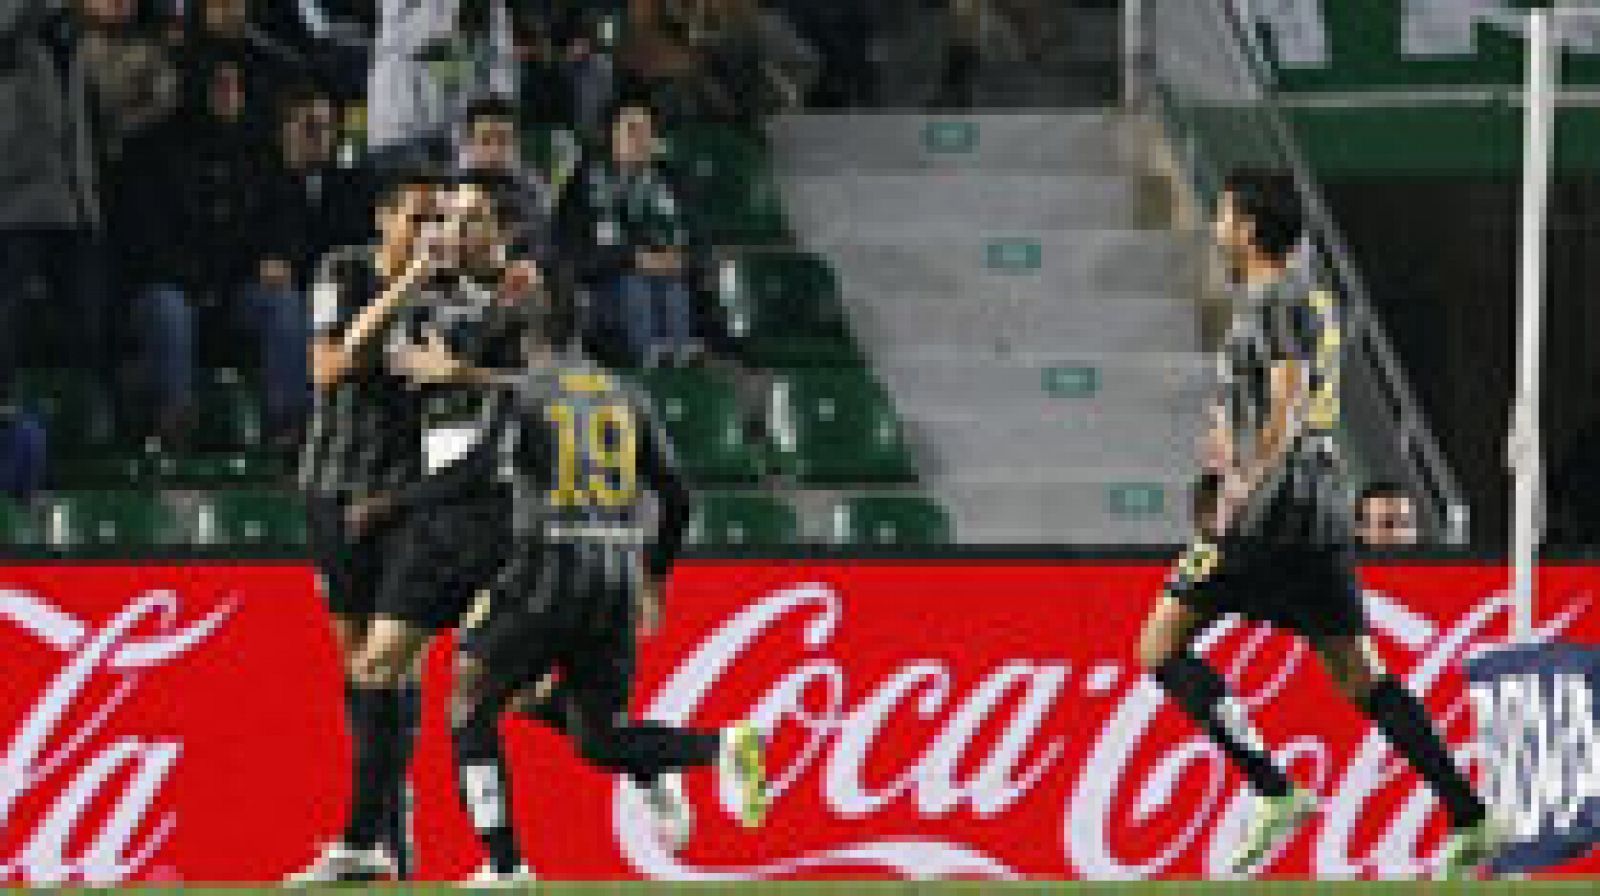 El Málaga se ha impuesto a domicilio al Elche por 1-2, después de remontar el gol en contra, marcado por David Lombán, con el que se fue al descanso. En la segunda parte, los tantos de Camacho y Luis Alberto sirvieron para que el equipo de Javi Gracia se llevase finalmente la victoria. 